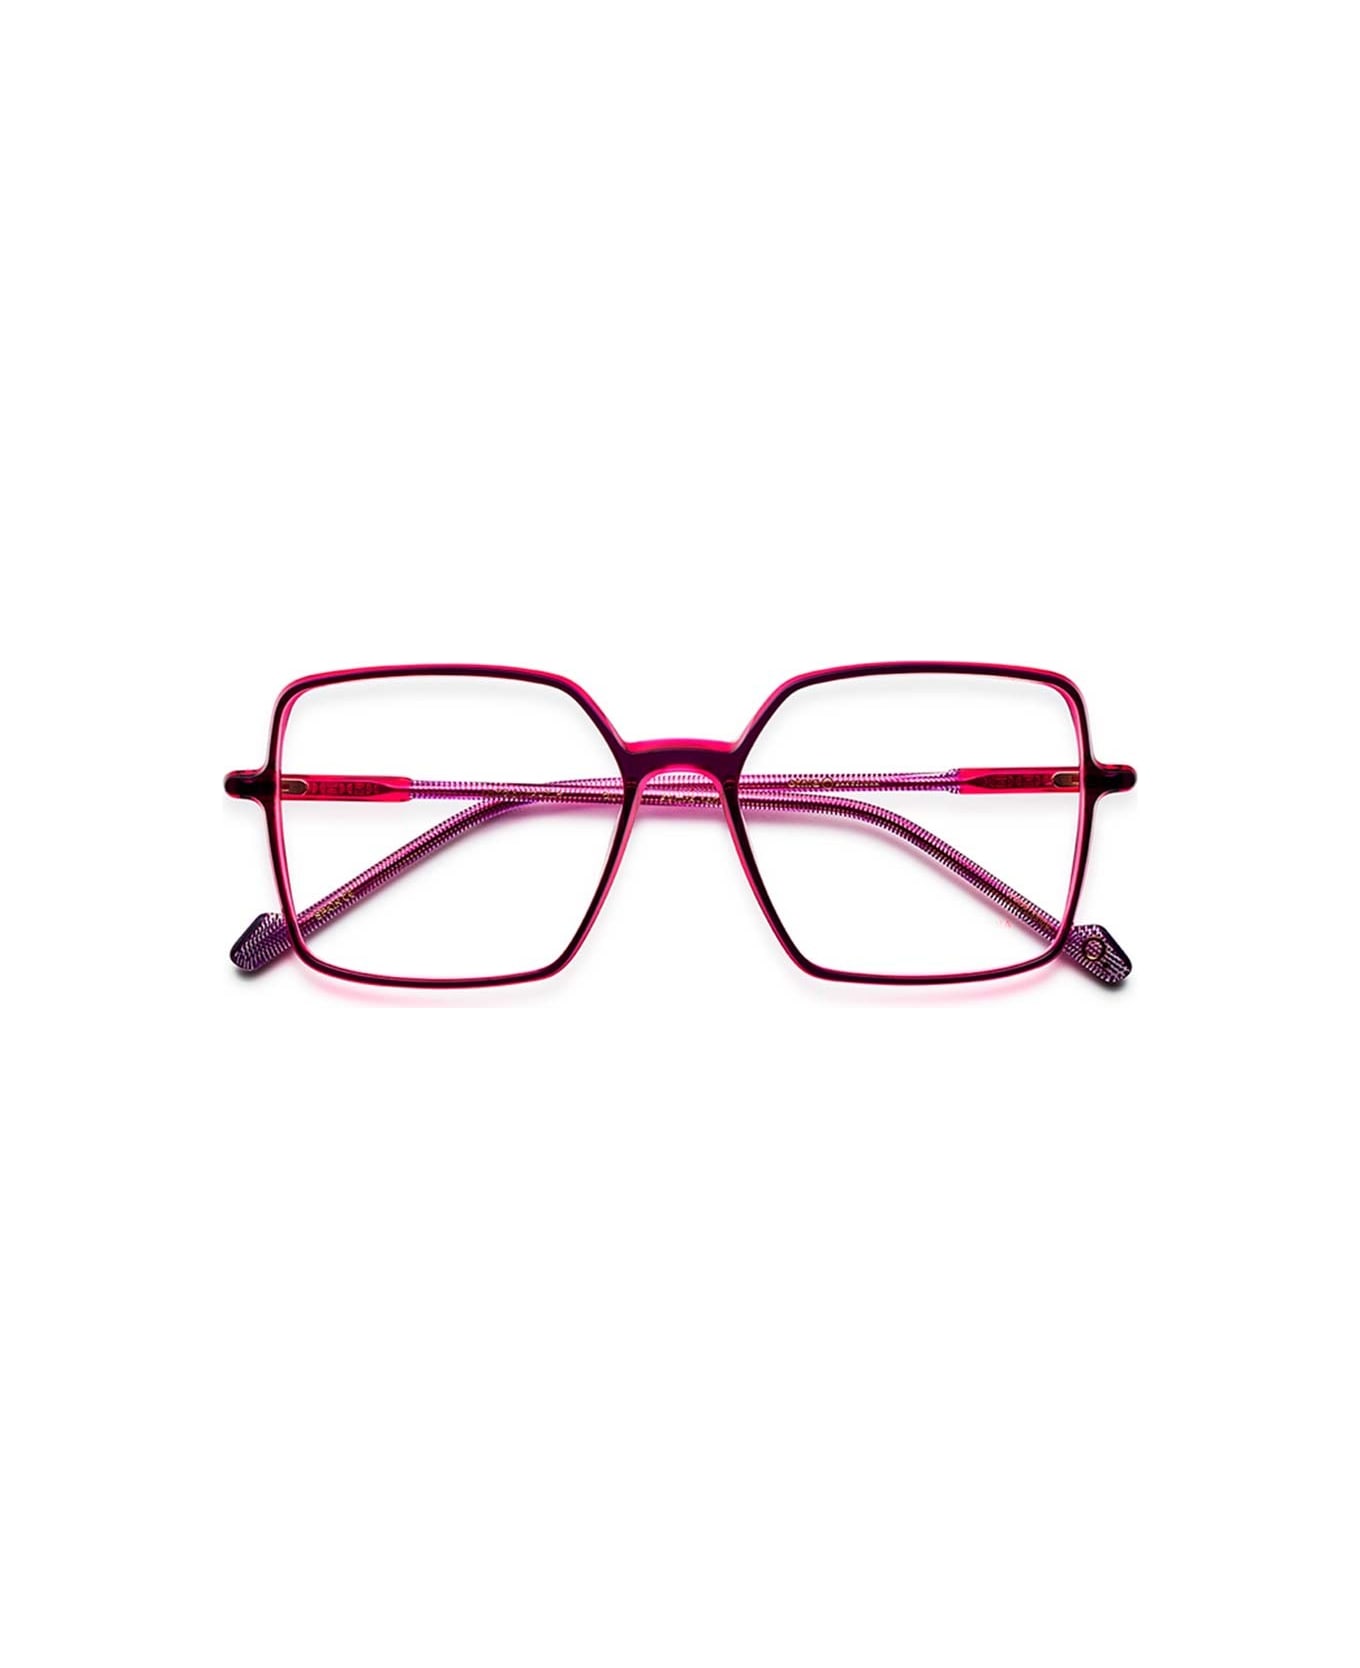 Etnia Barcelona Glasses - Fucsia アイウェア